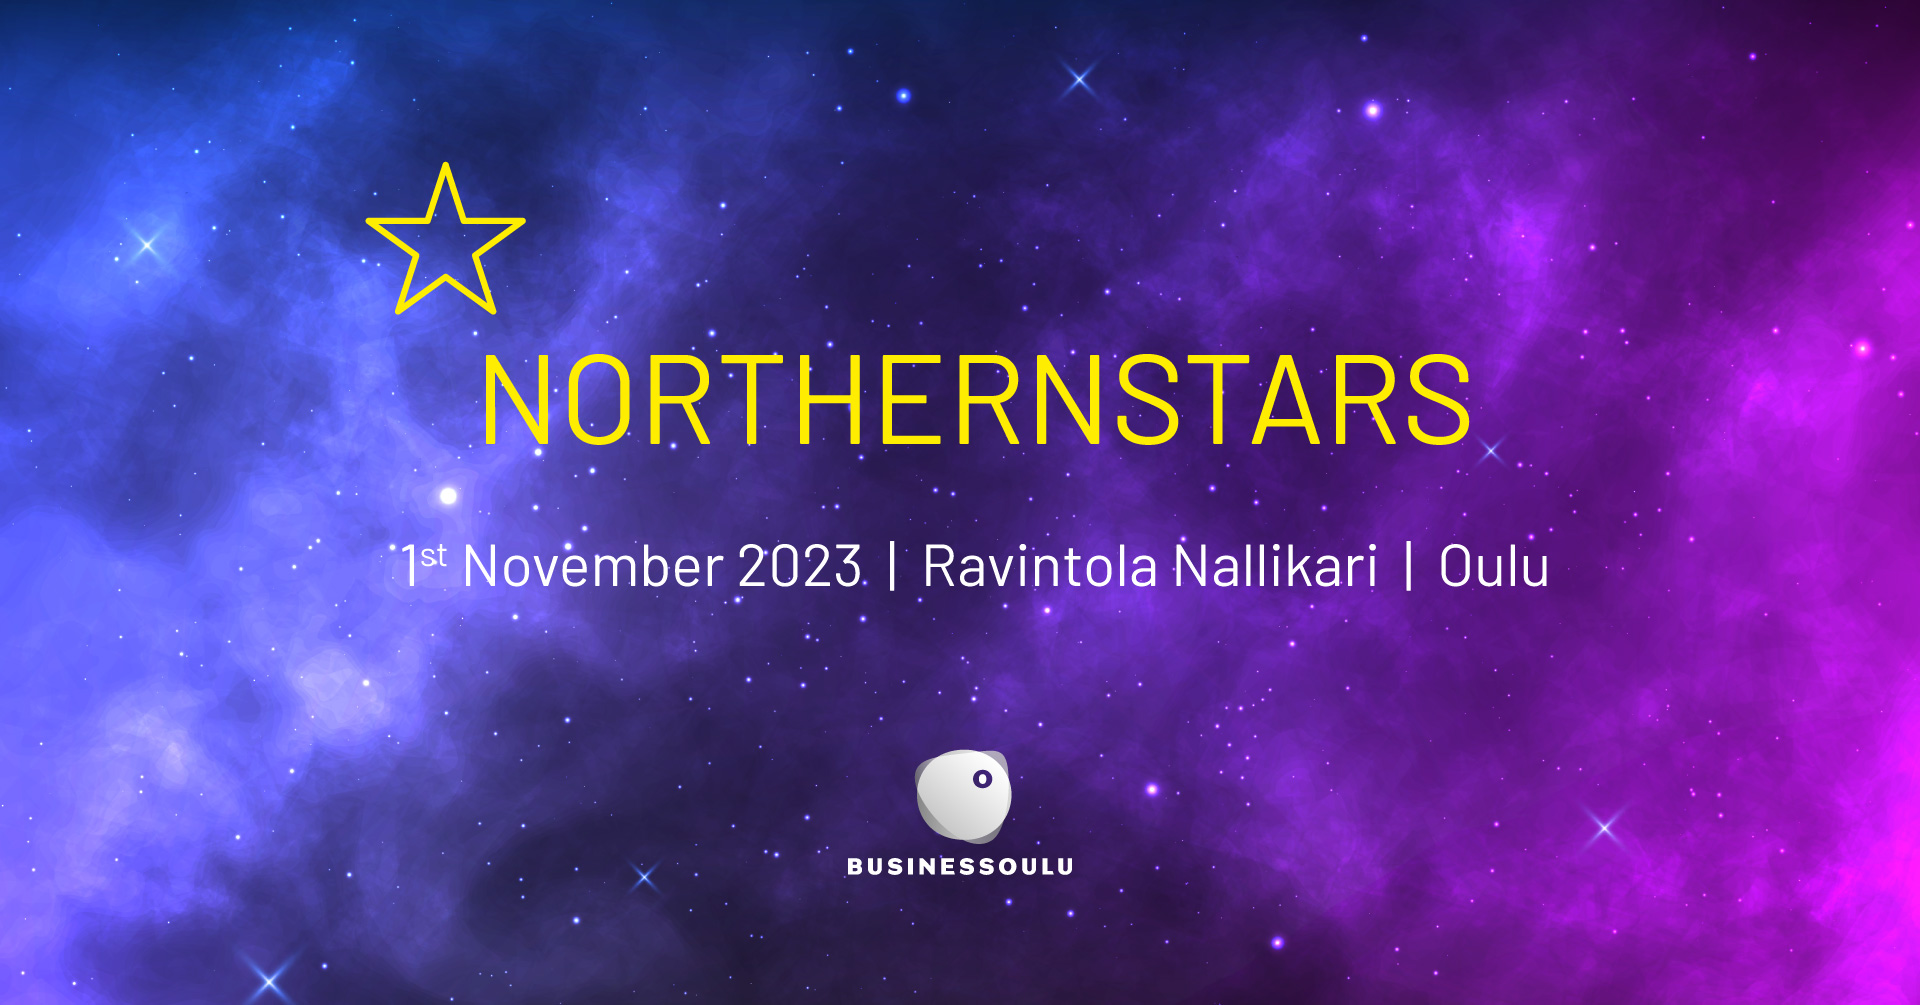 NorthernStars -tapahtuma 1.11.2023 Ravintola Nallikarissa Oulussa